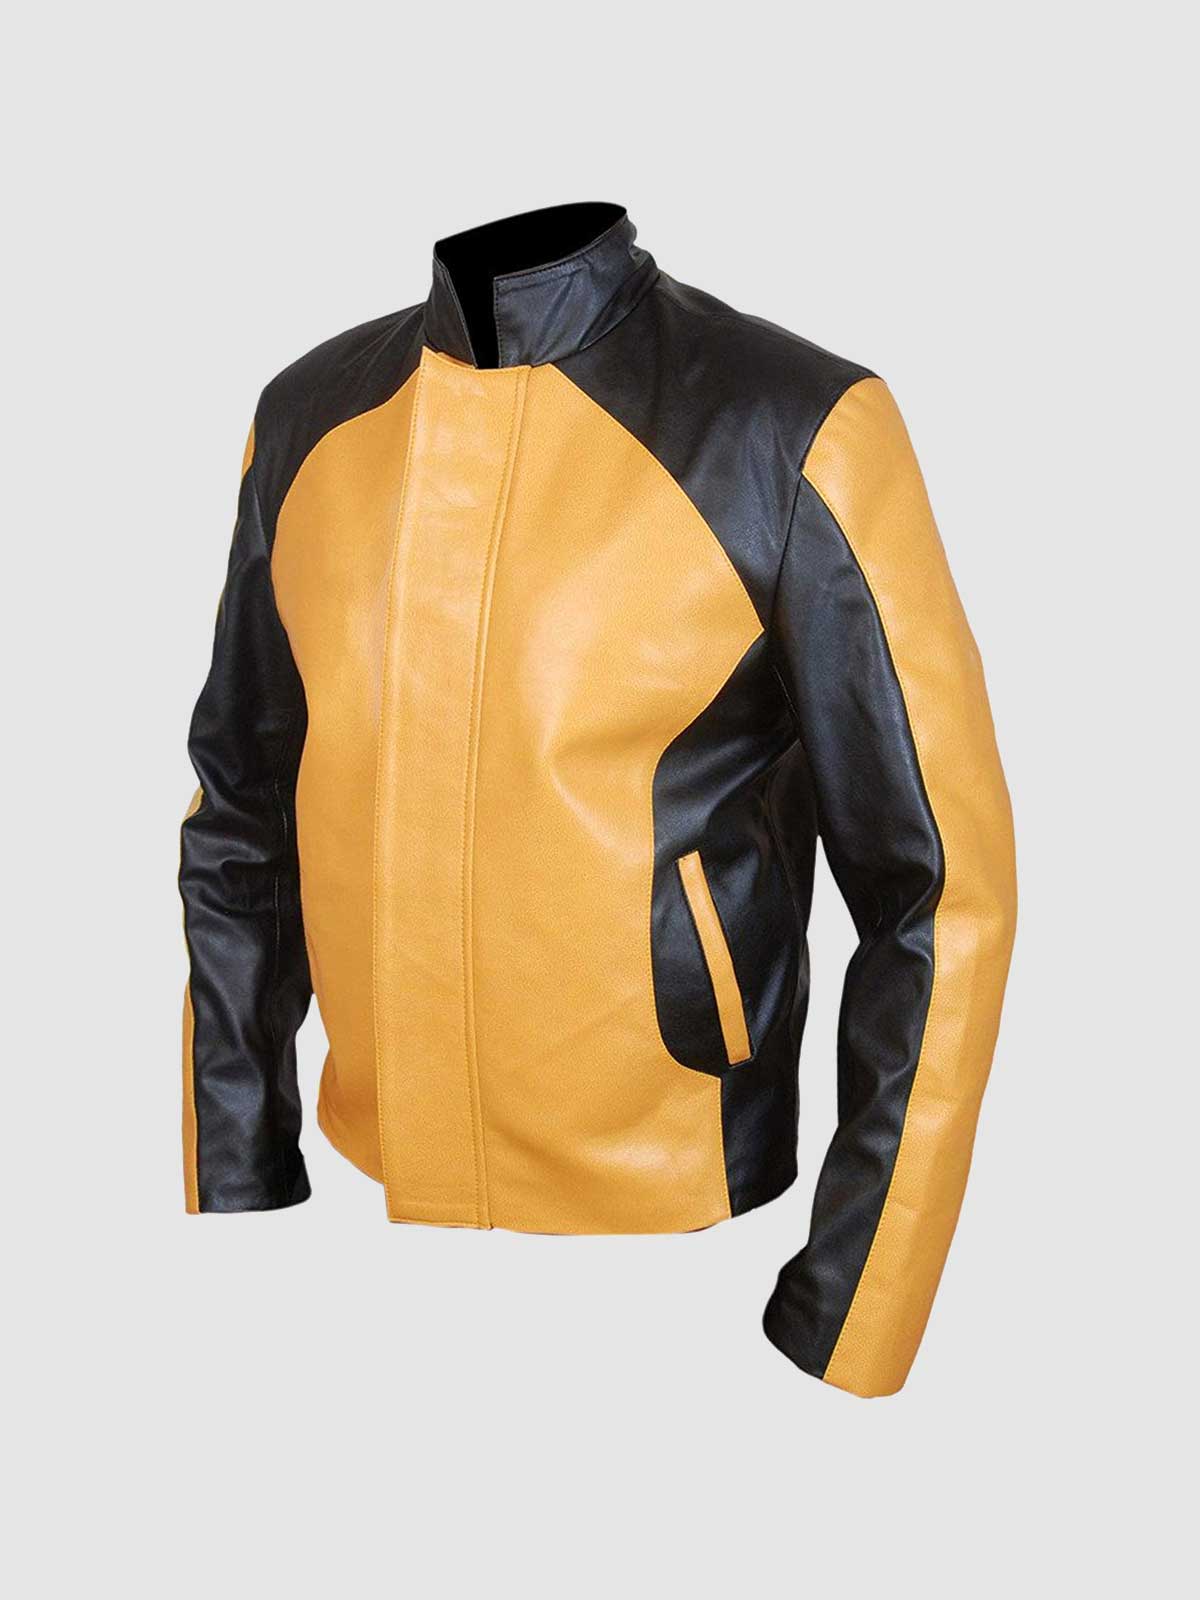 Men's Yellow & Black Leather Jacket | Leather Jacket Master